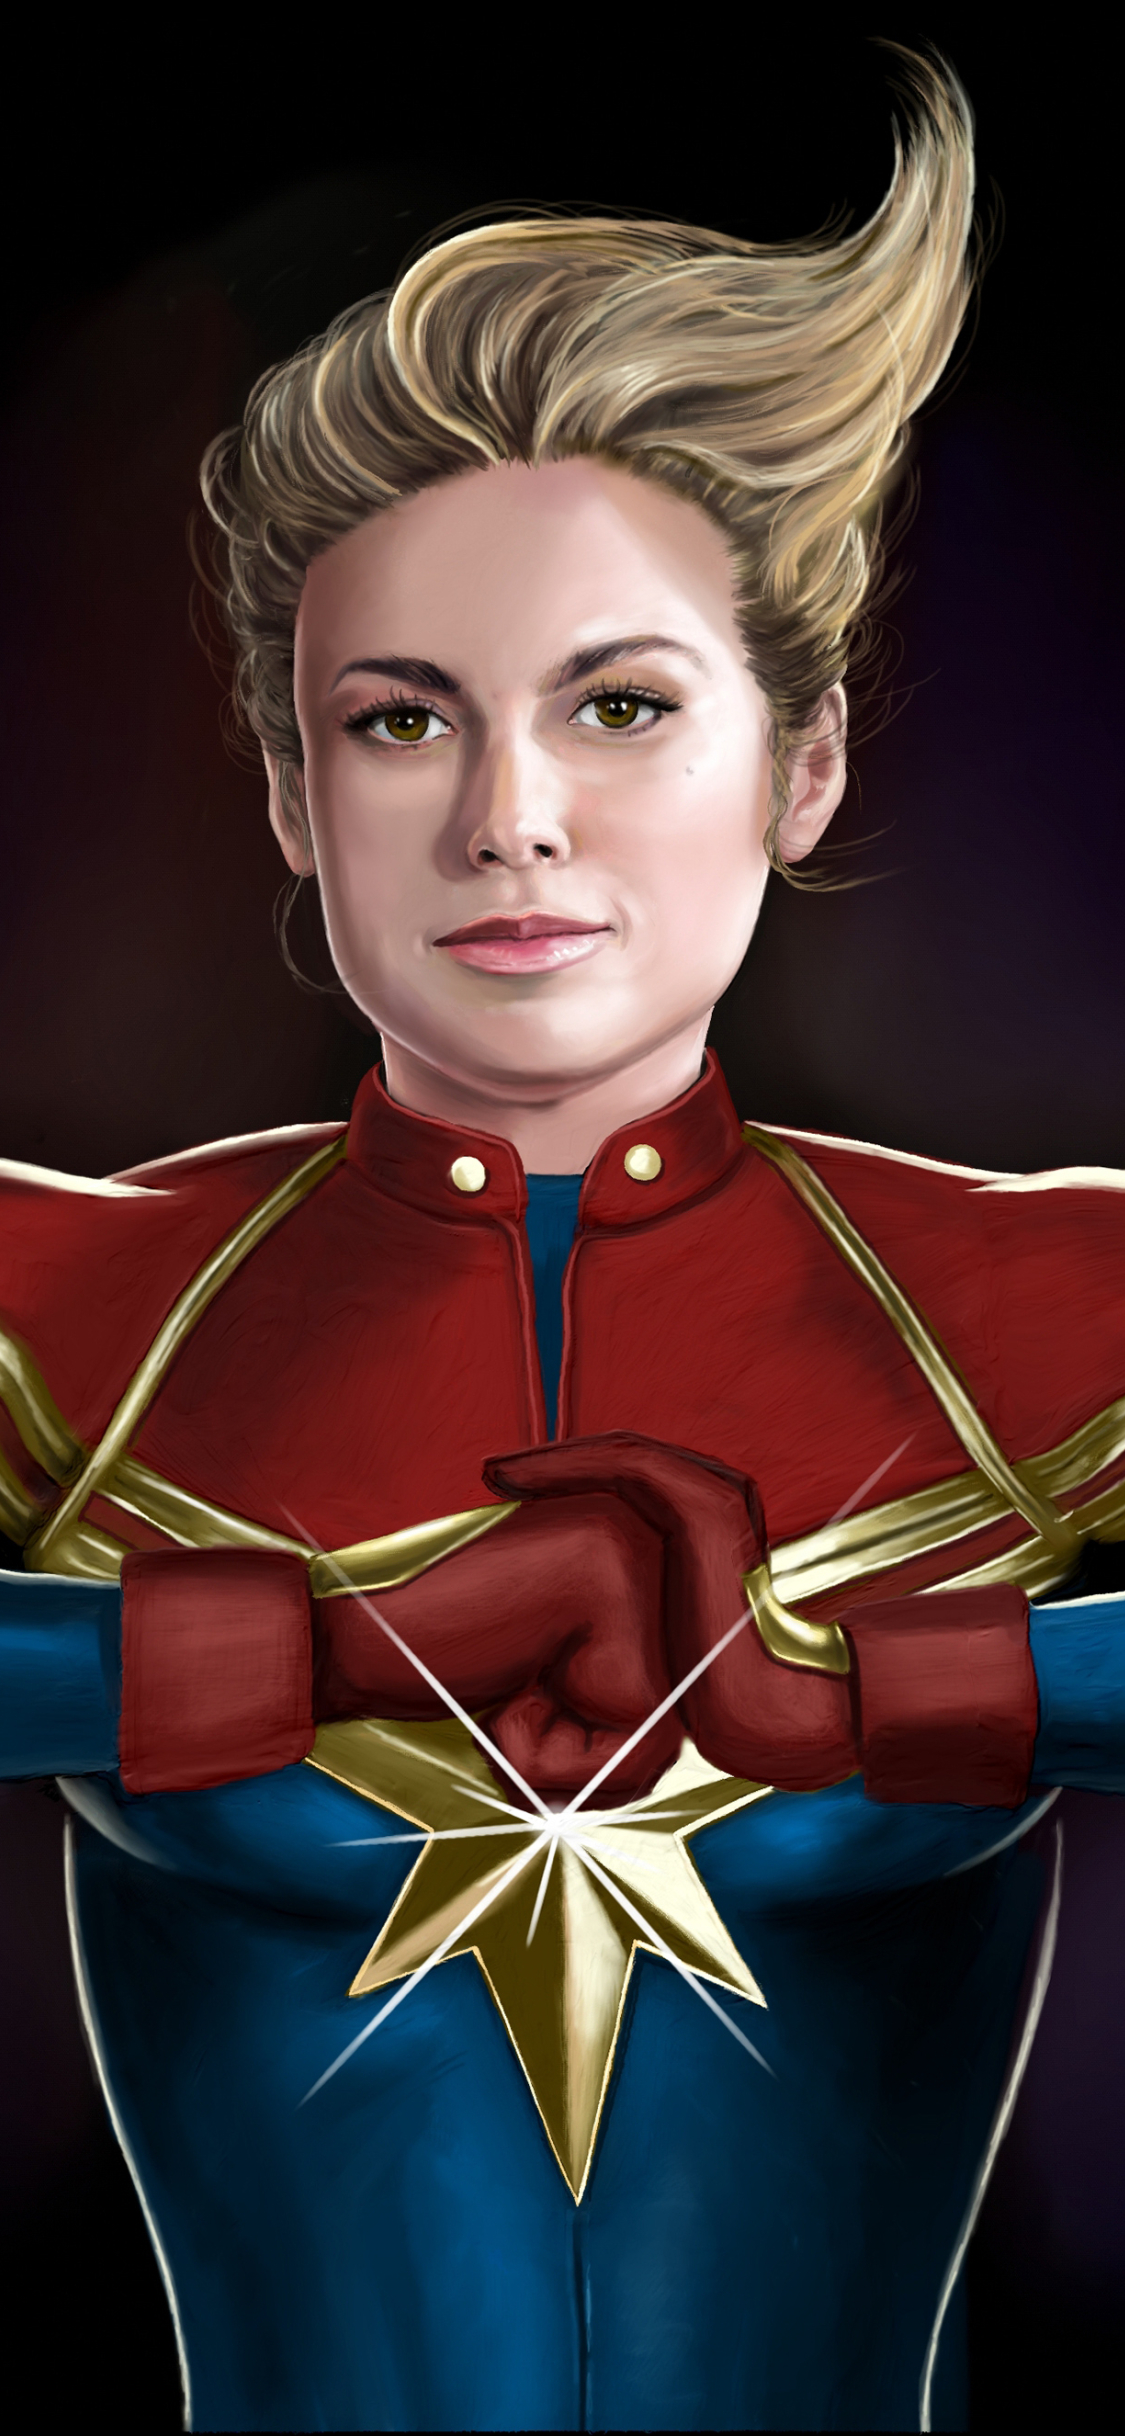 1125x2436 Brie Larson as Captain Marvel Illustration ...